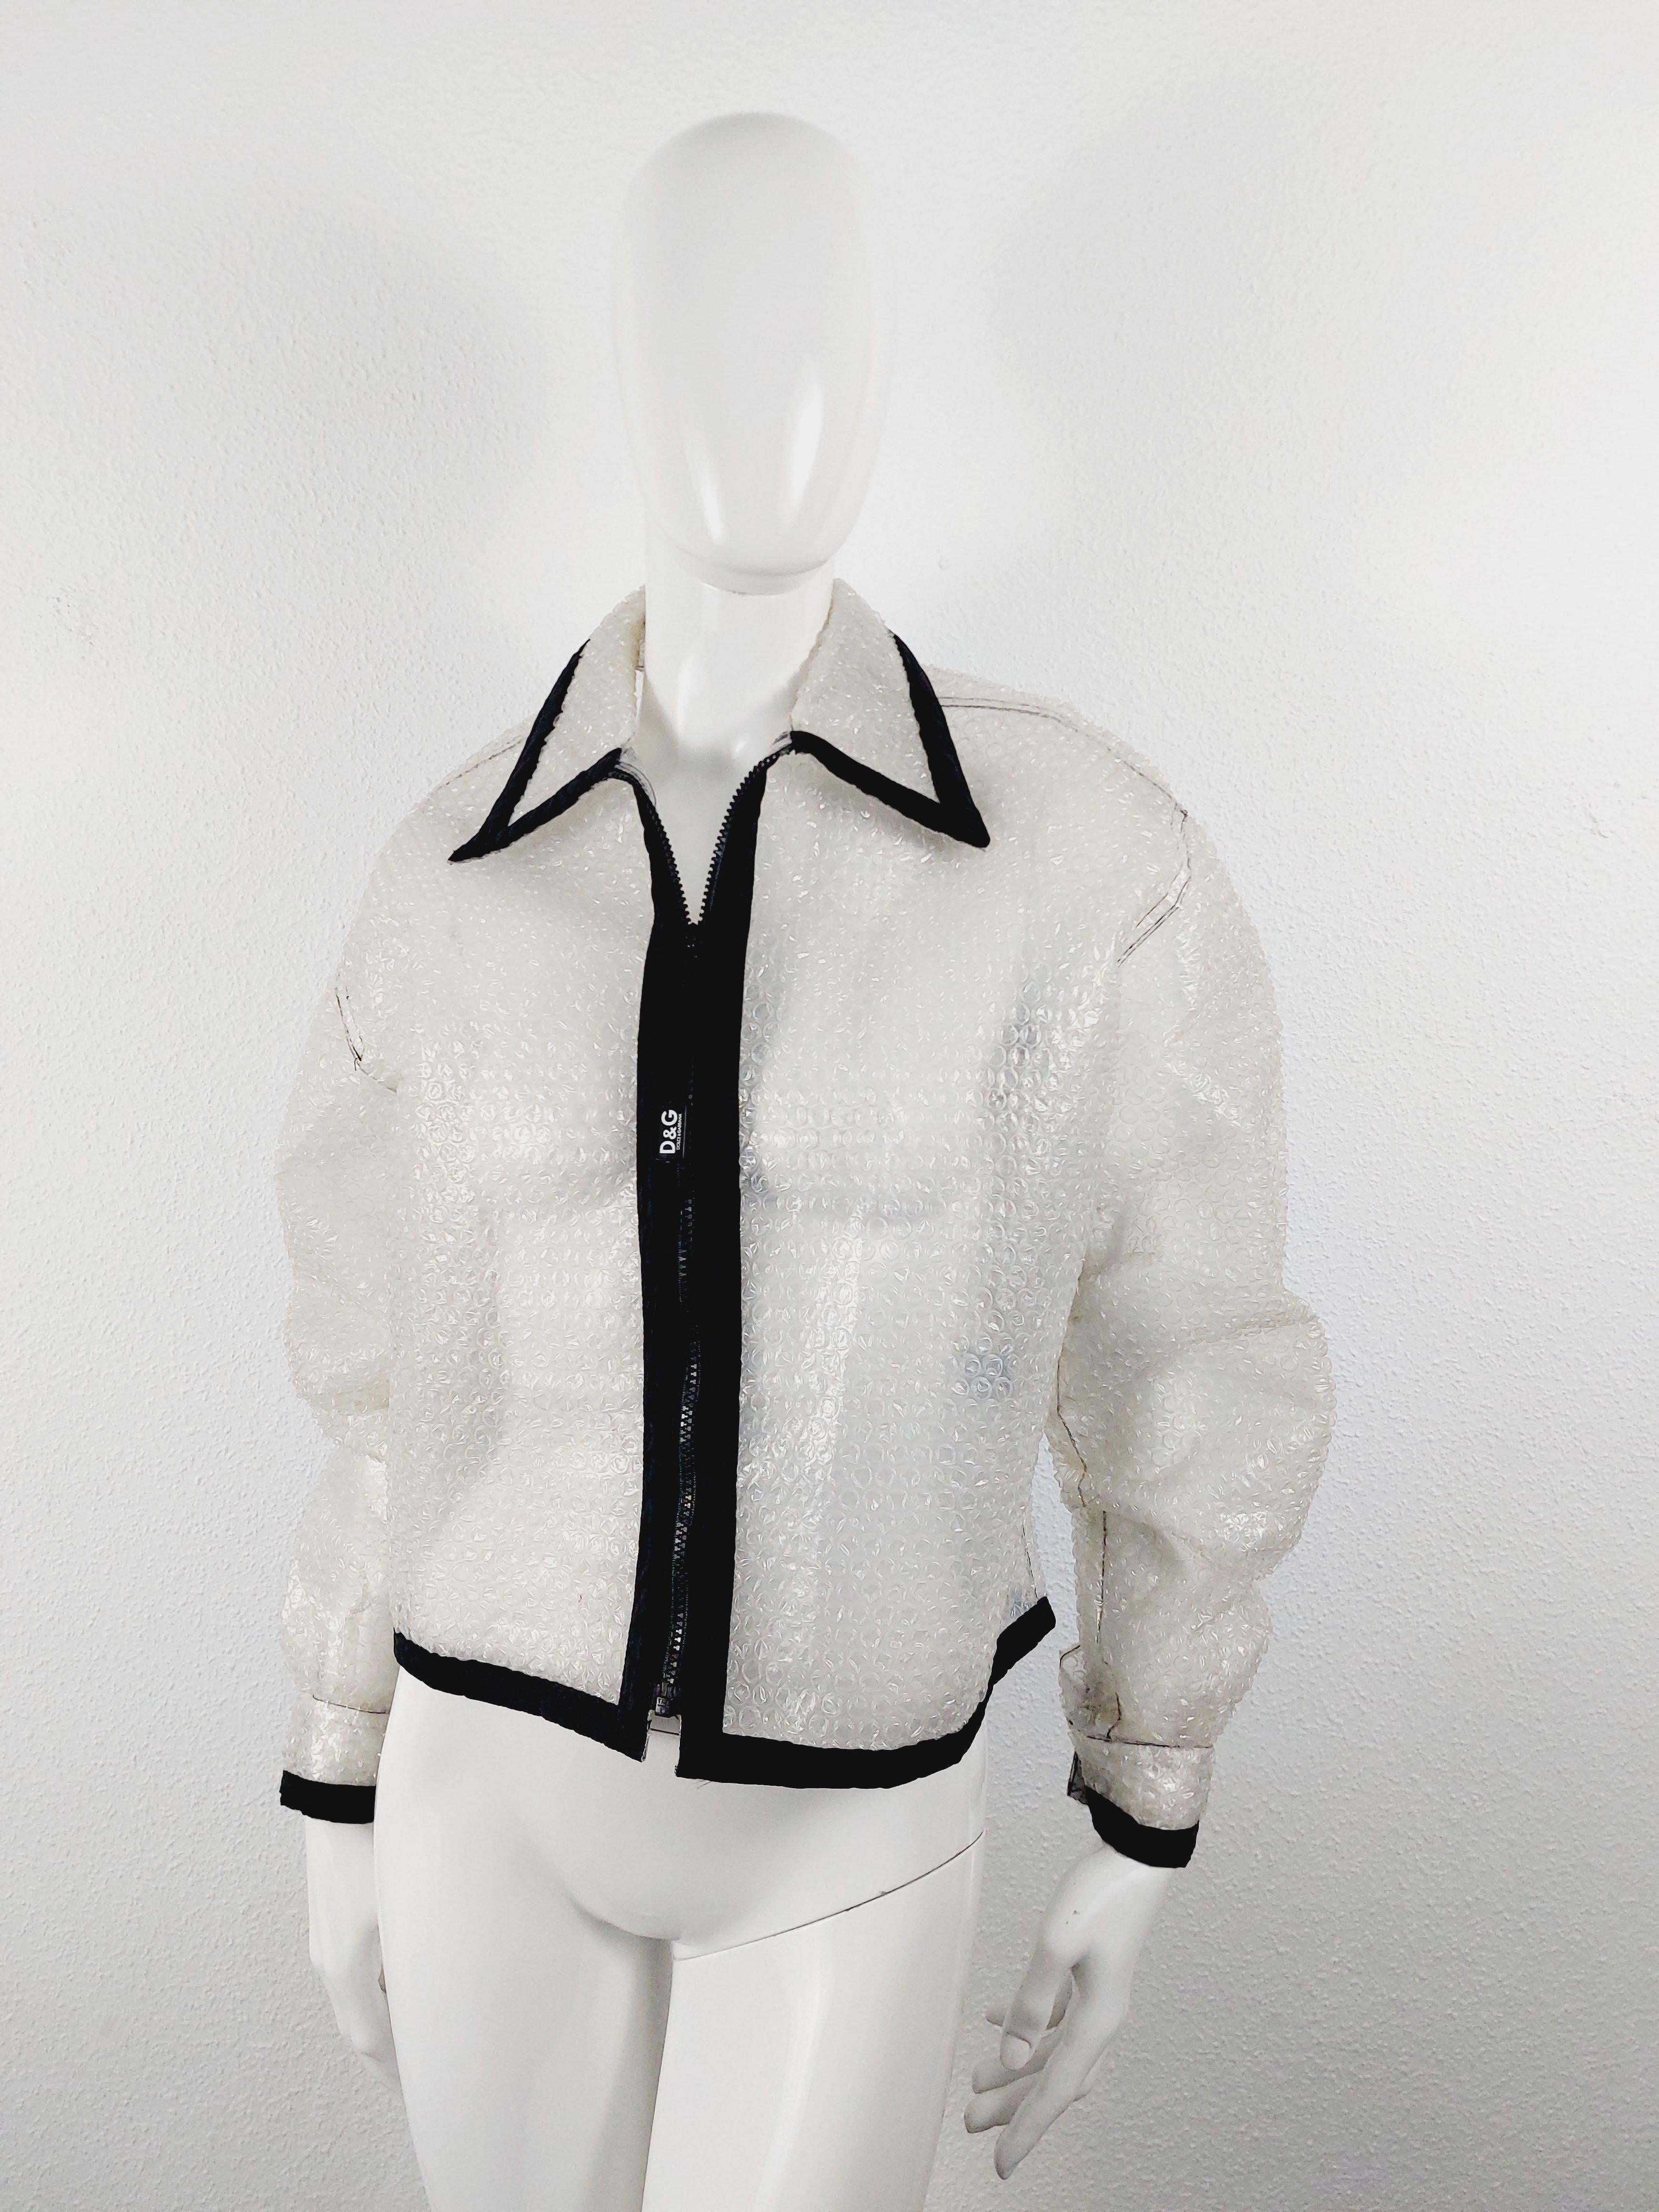 1990er D&G by Dolce & Gabbana Clear Plastic Bubble Wrap Laufsteg Jacke Mantel aus Kunststoff
So etwas habe ich noch nie gesehen. Es ist eine Regenjacke, die aus Luftpolsterfolie hergestellt ist. Die Art, die Sie zum Verpacken von Waren verwenden.